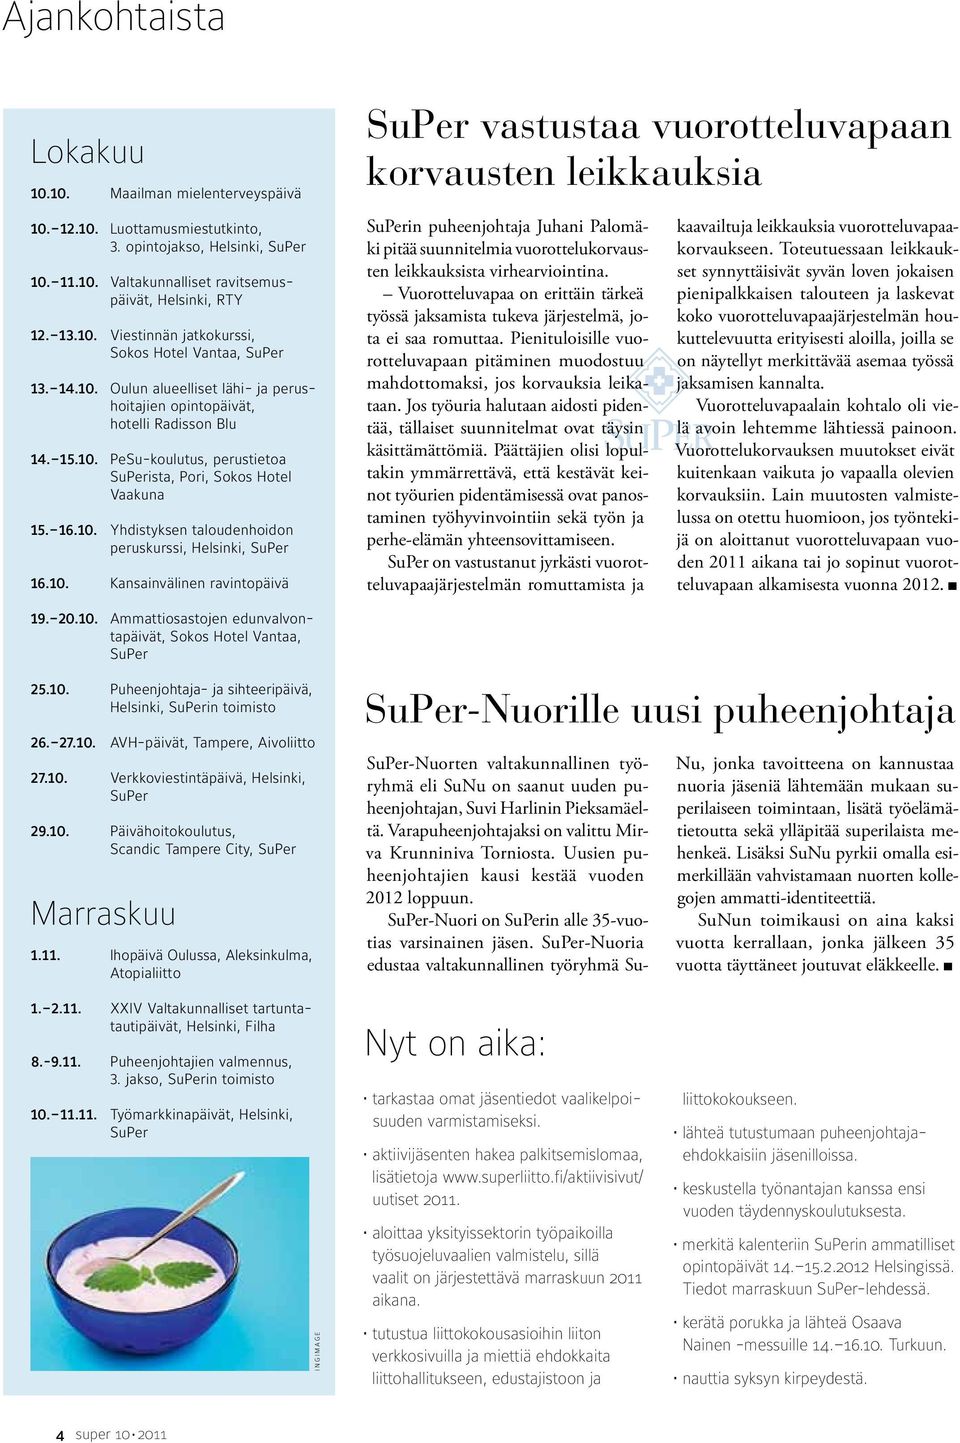 10. Kansainvälinen ravintopäivä SuPer vastustaa vuorotteluvapaan korvausten leikkauksia SuPerin puheenjohtaja Juhani Palomäki pitää suunnitelmia vuorottelukorvausten leikkauksista virhearviointina.